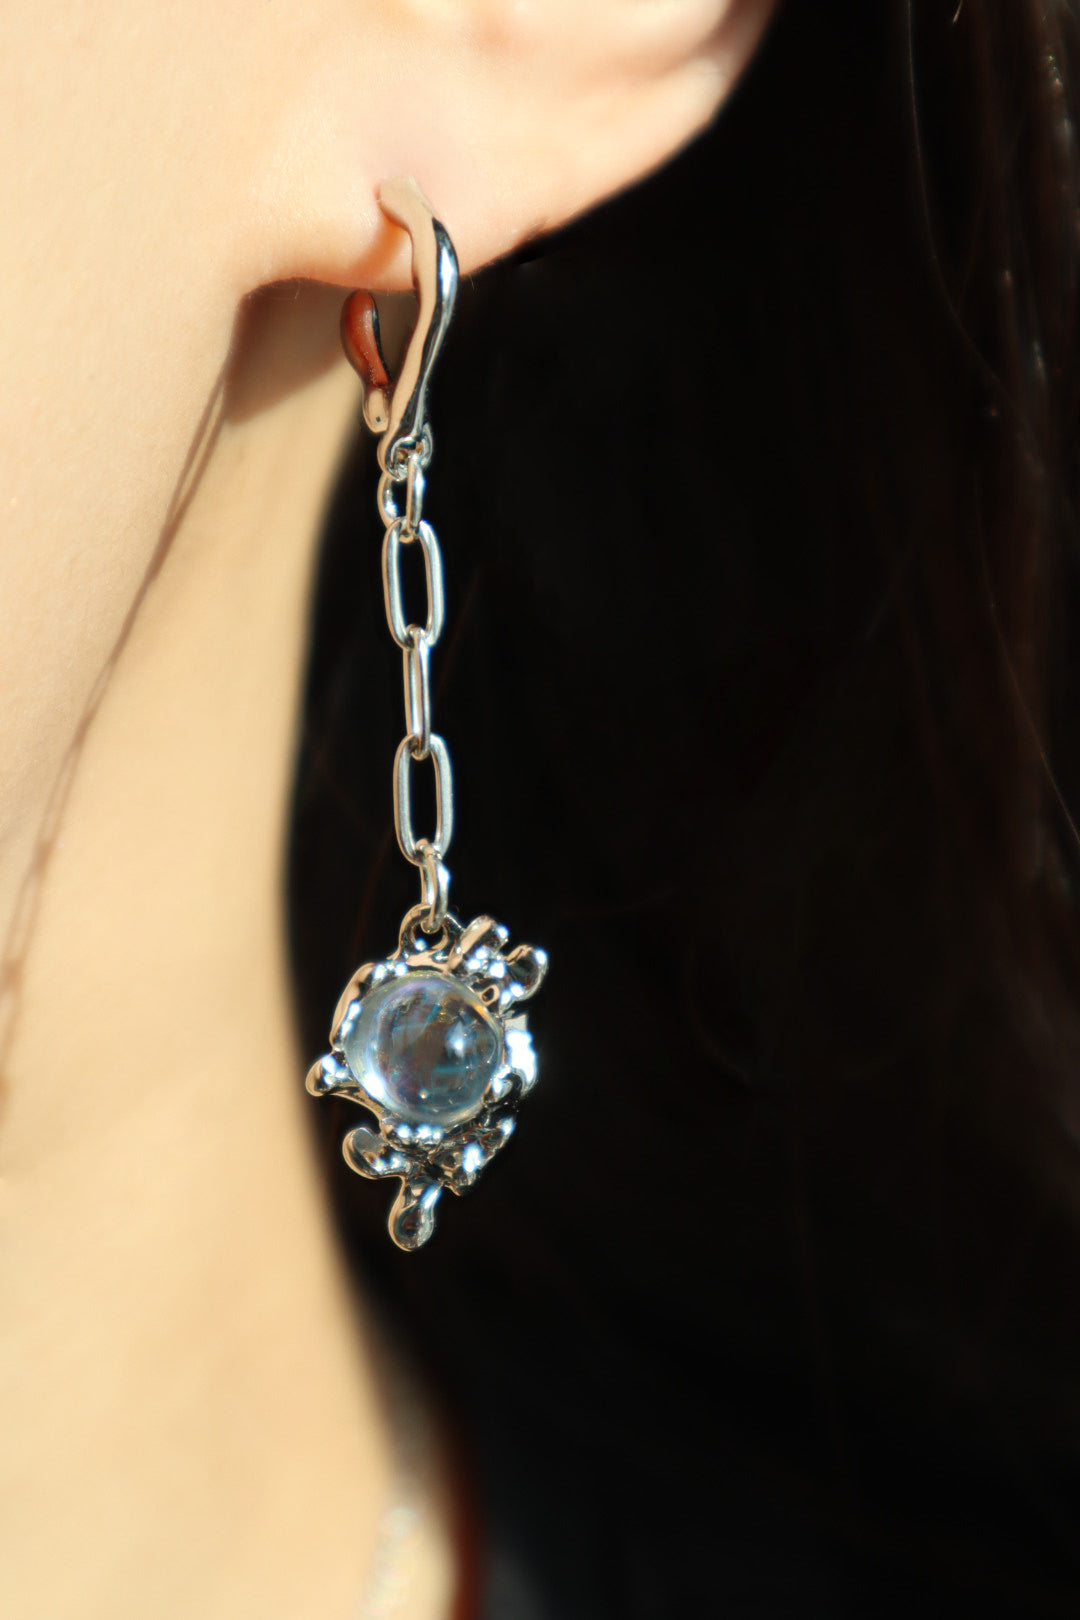 Moonstone Dangle Earrings